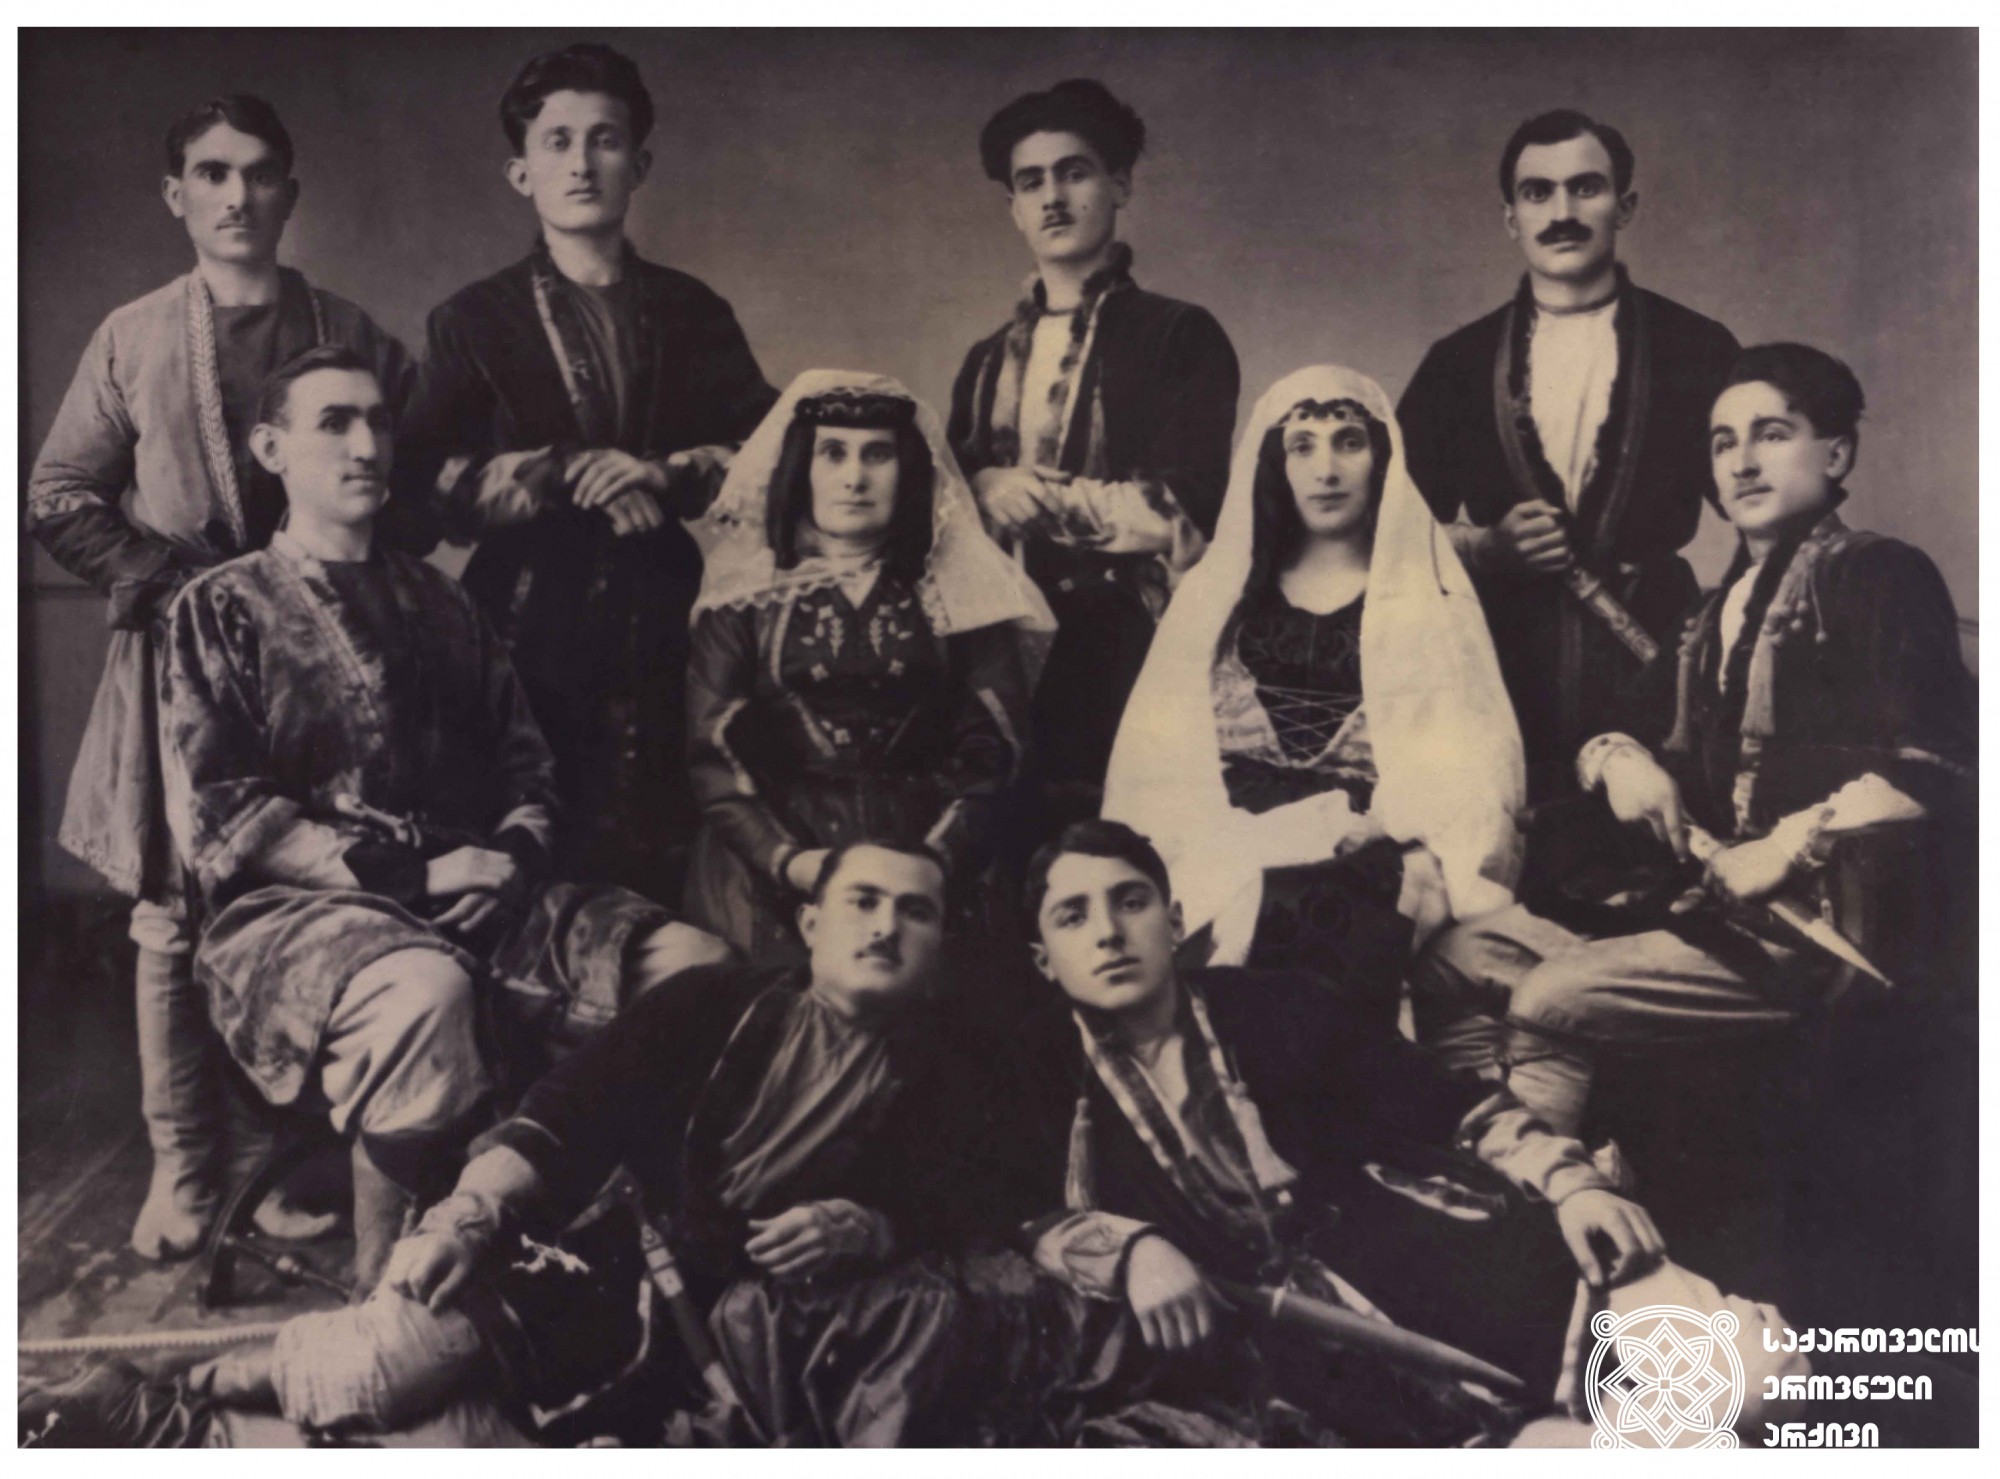 დები თარხნიშვილების ქართლ-კახური სიმღერების პირველი გუნდი. <br>
1924 წელი.